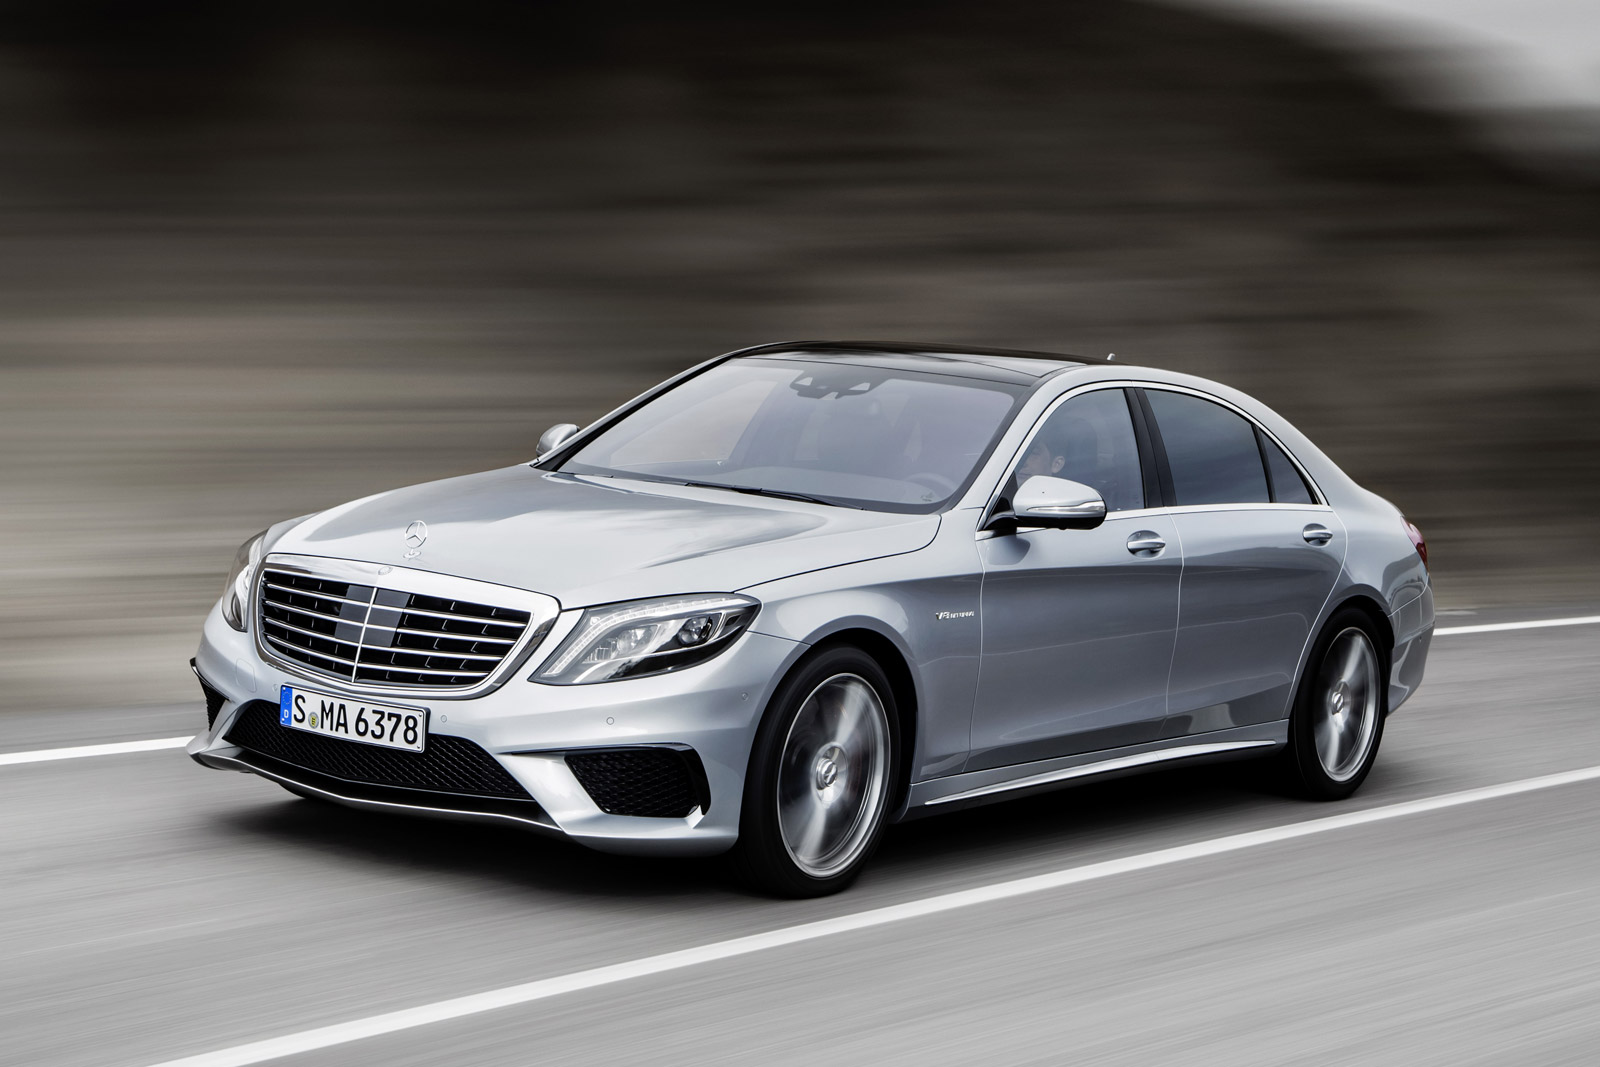 2014 Mercedes-Benz S Class: Best Car To Buy 2014 Nominee